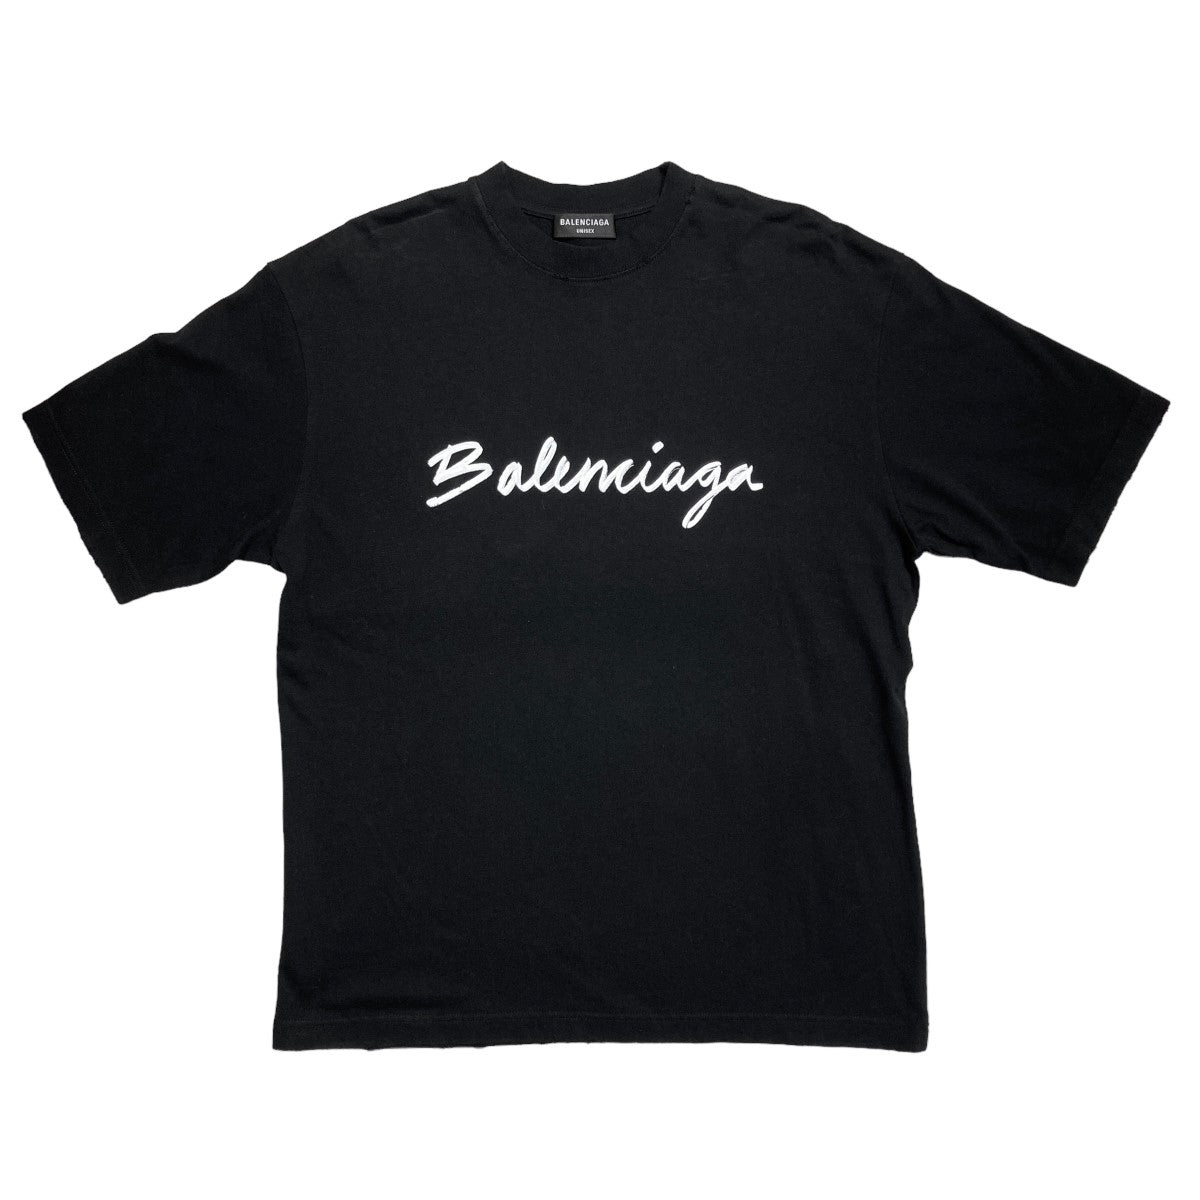 BALENCIAGA(バレンシアガ) 22AWT-SHIRT ペイントロゴ半袖カットソー 